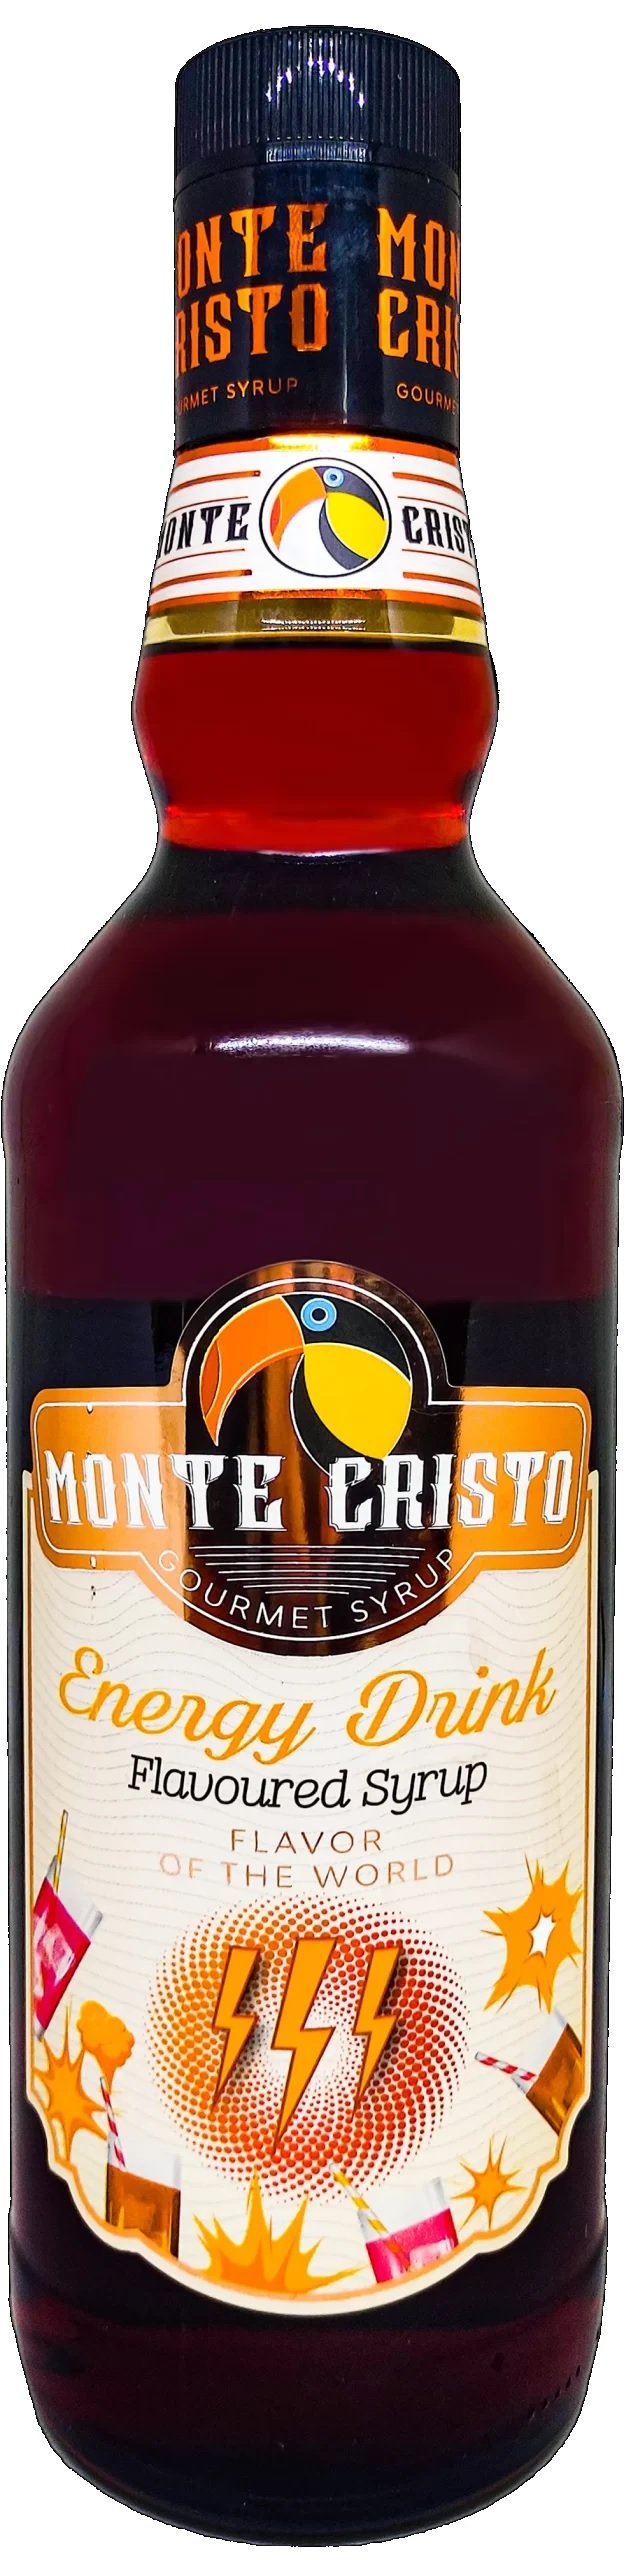 Monte Cristo Enerji İçeceği (Energy Drink) Aromalı Şurup 700 ml.